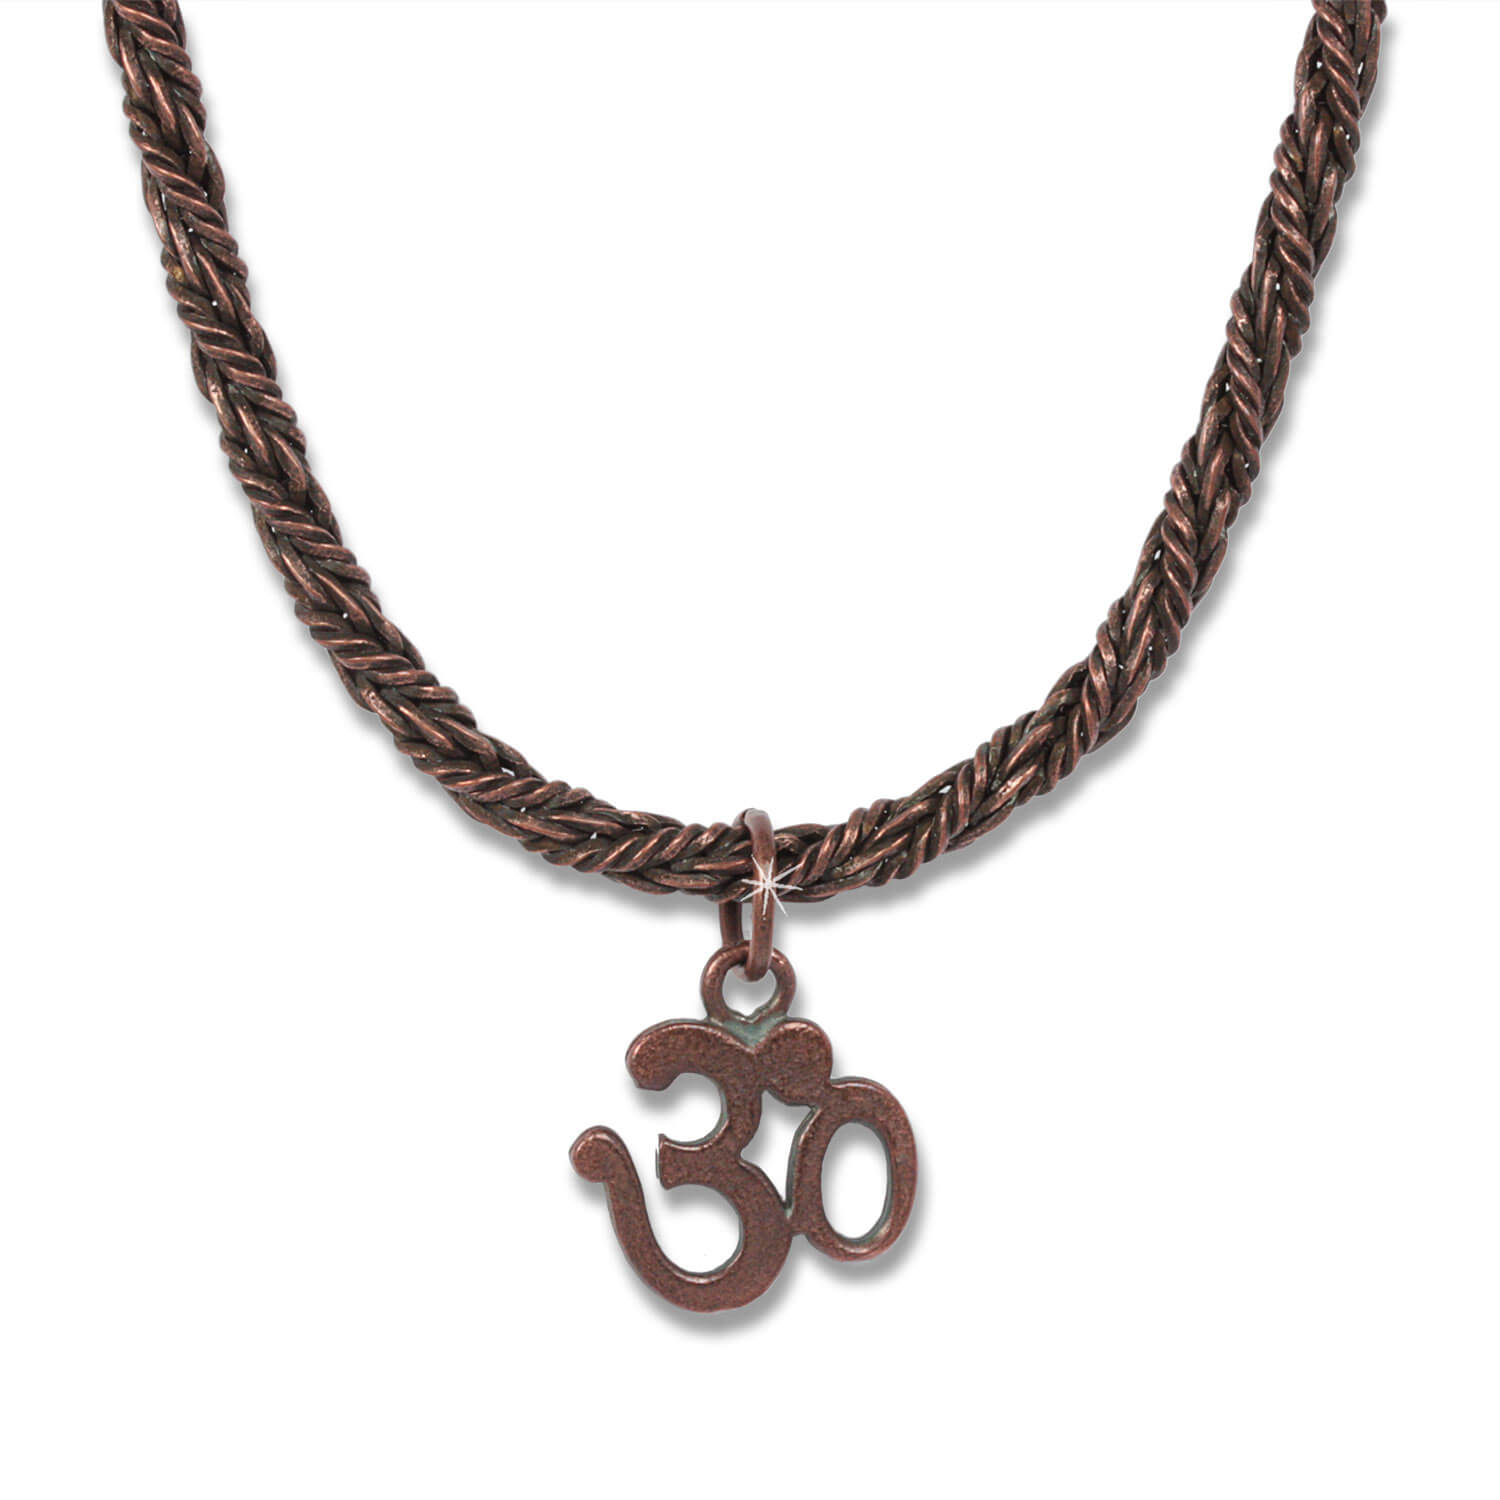 Copper OM K-nigskette - Indian Symbols men's necklace, 45 cm long